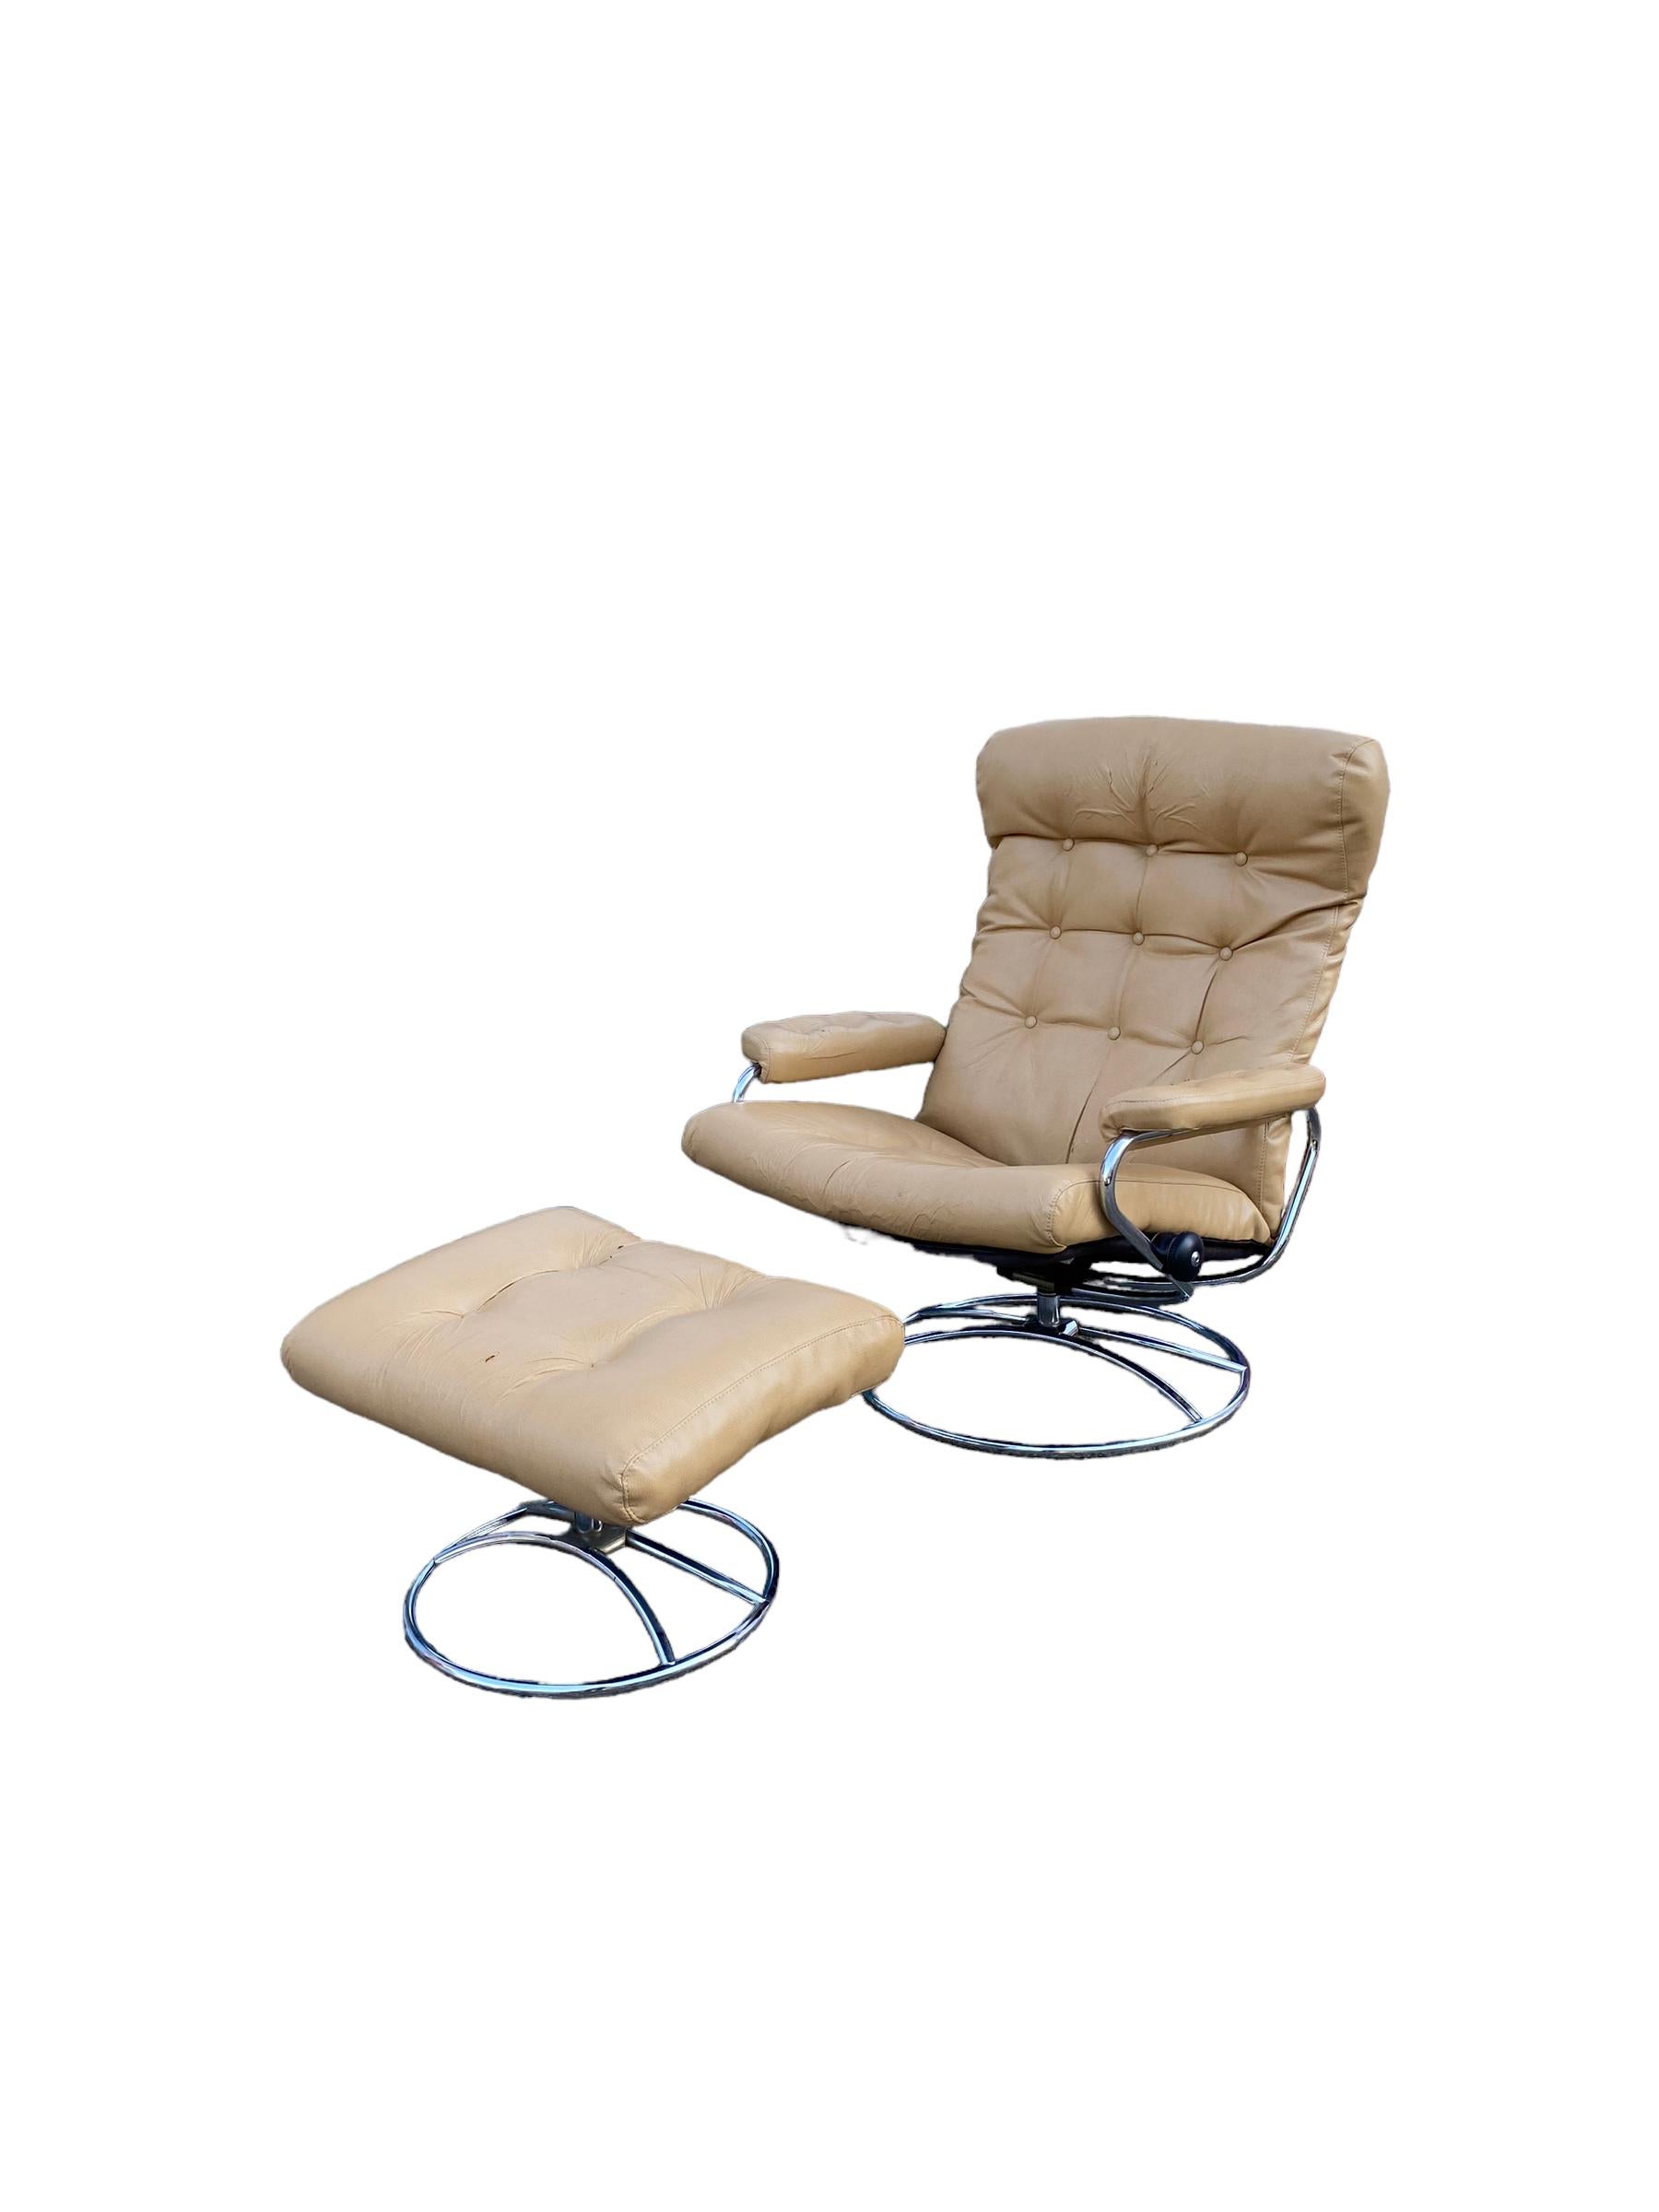 Chaise longue inclinable et ottoman Ekornes Stressless. Elegant design scandinave du milieu du siècle avec cadre tubulaire en chrome plié et coussin en cuir collé crème. Ce design intemporel vous permet de vous détendre en tout confort.
Vendu en